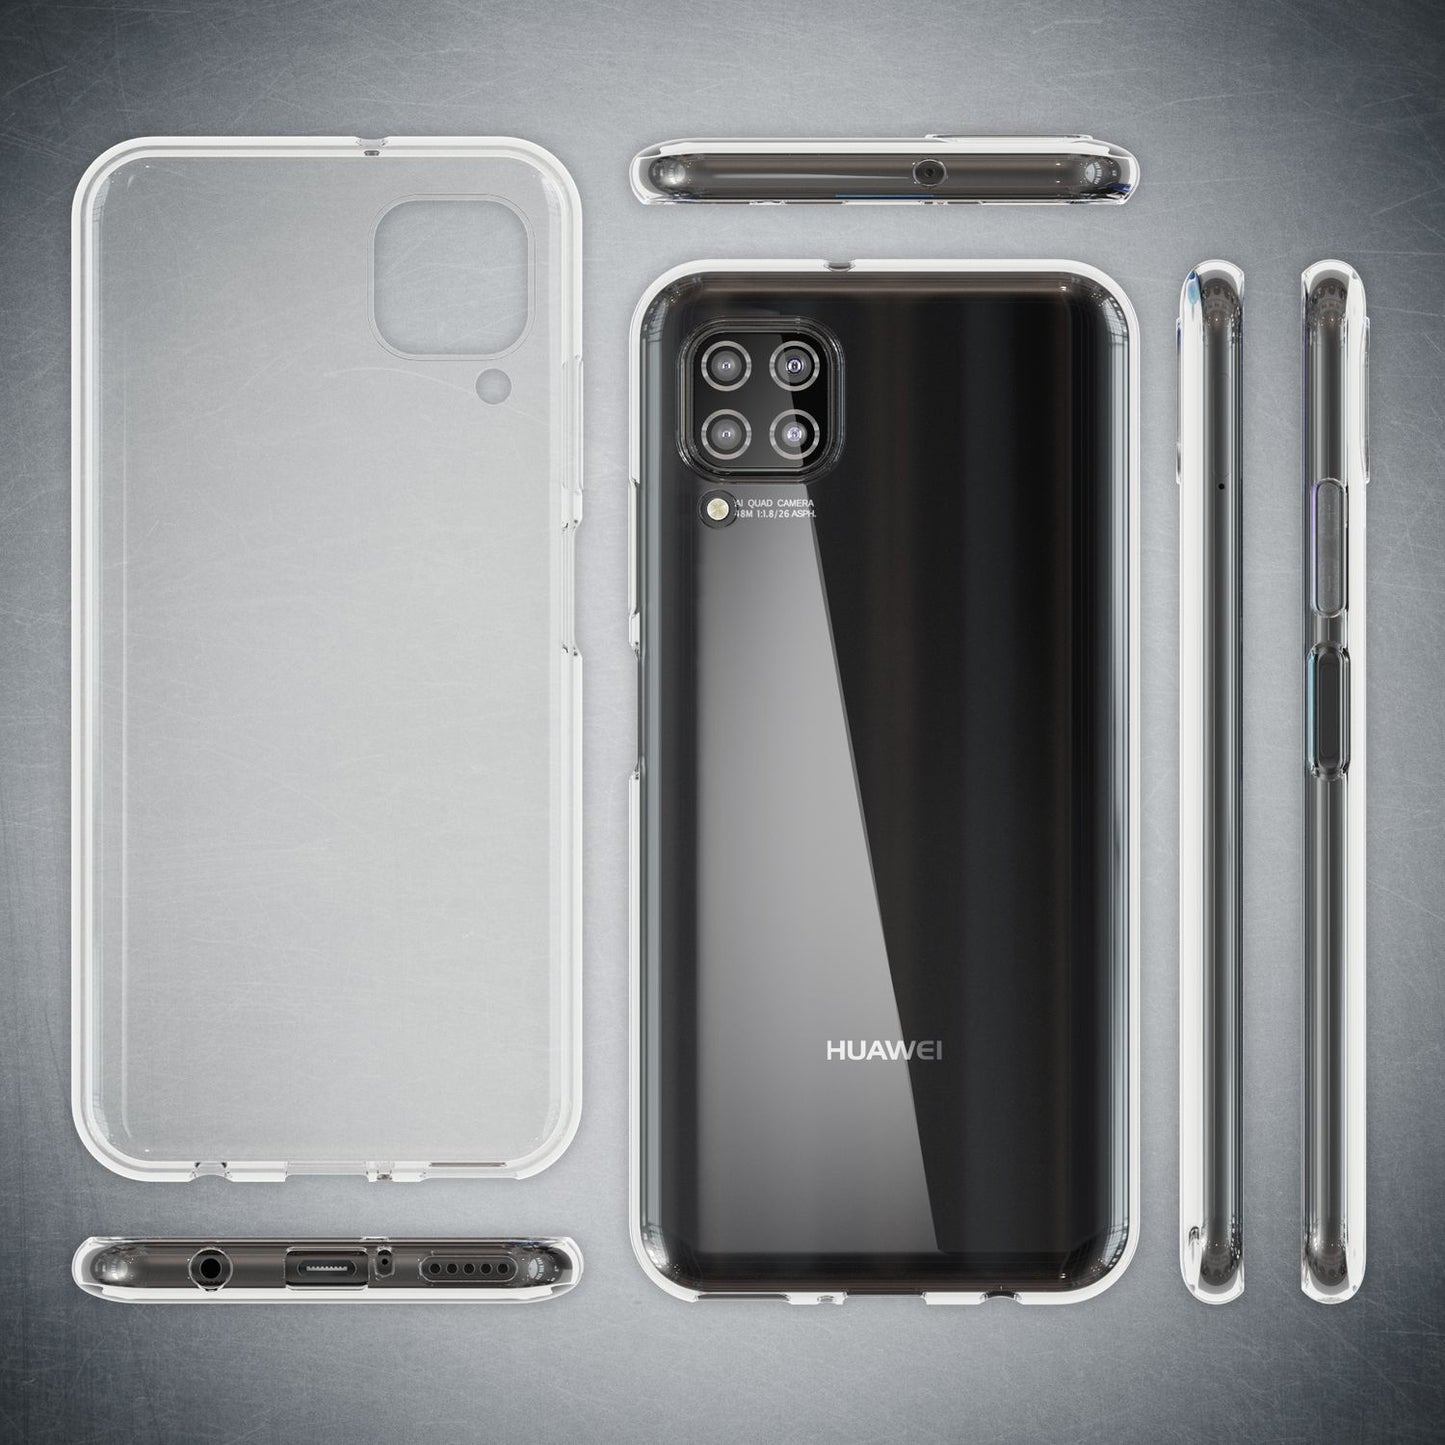 NALIA Handy Hülle für Huawei P40 Lite, Slim Case Schutz Cover Tasche Bumper Etui